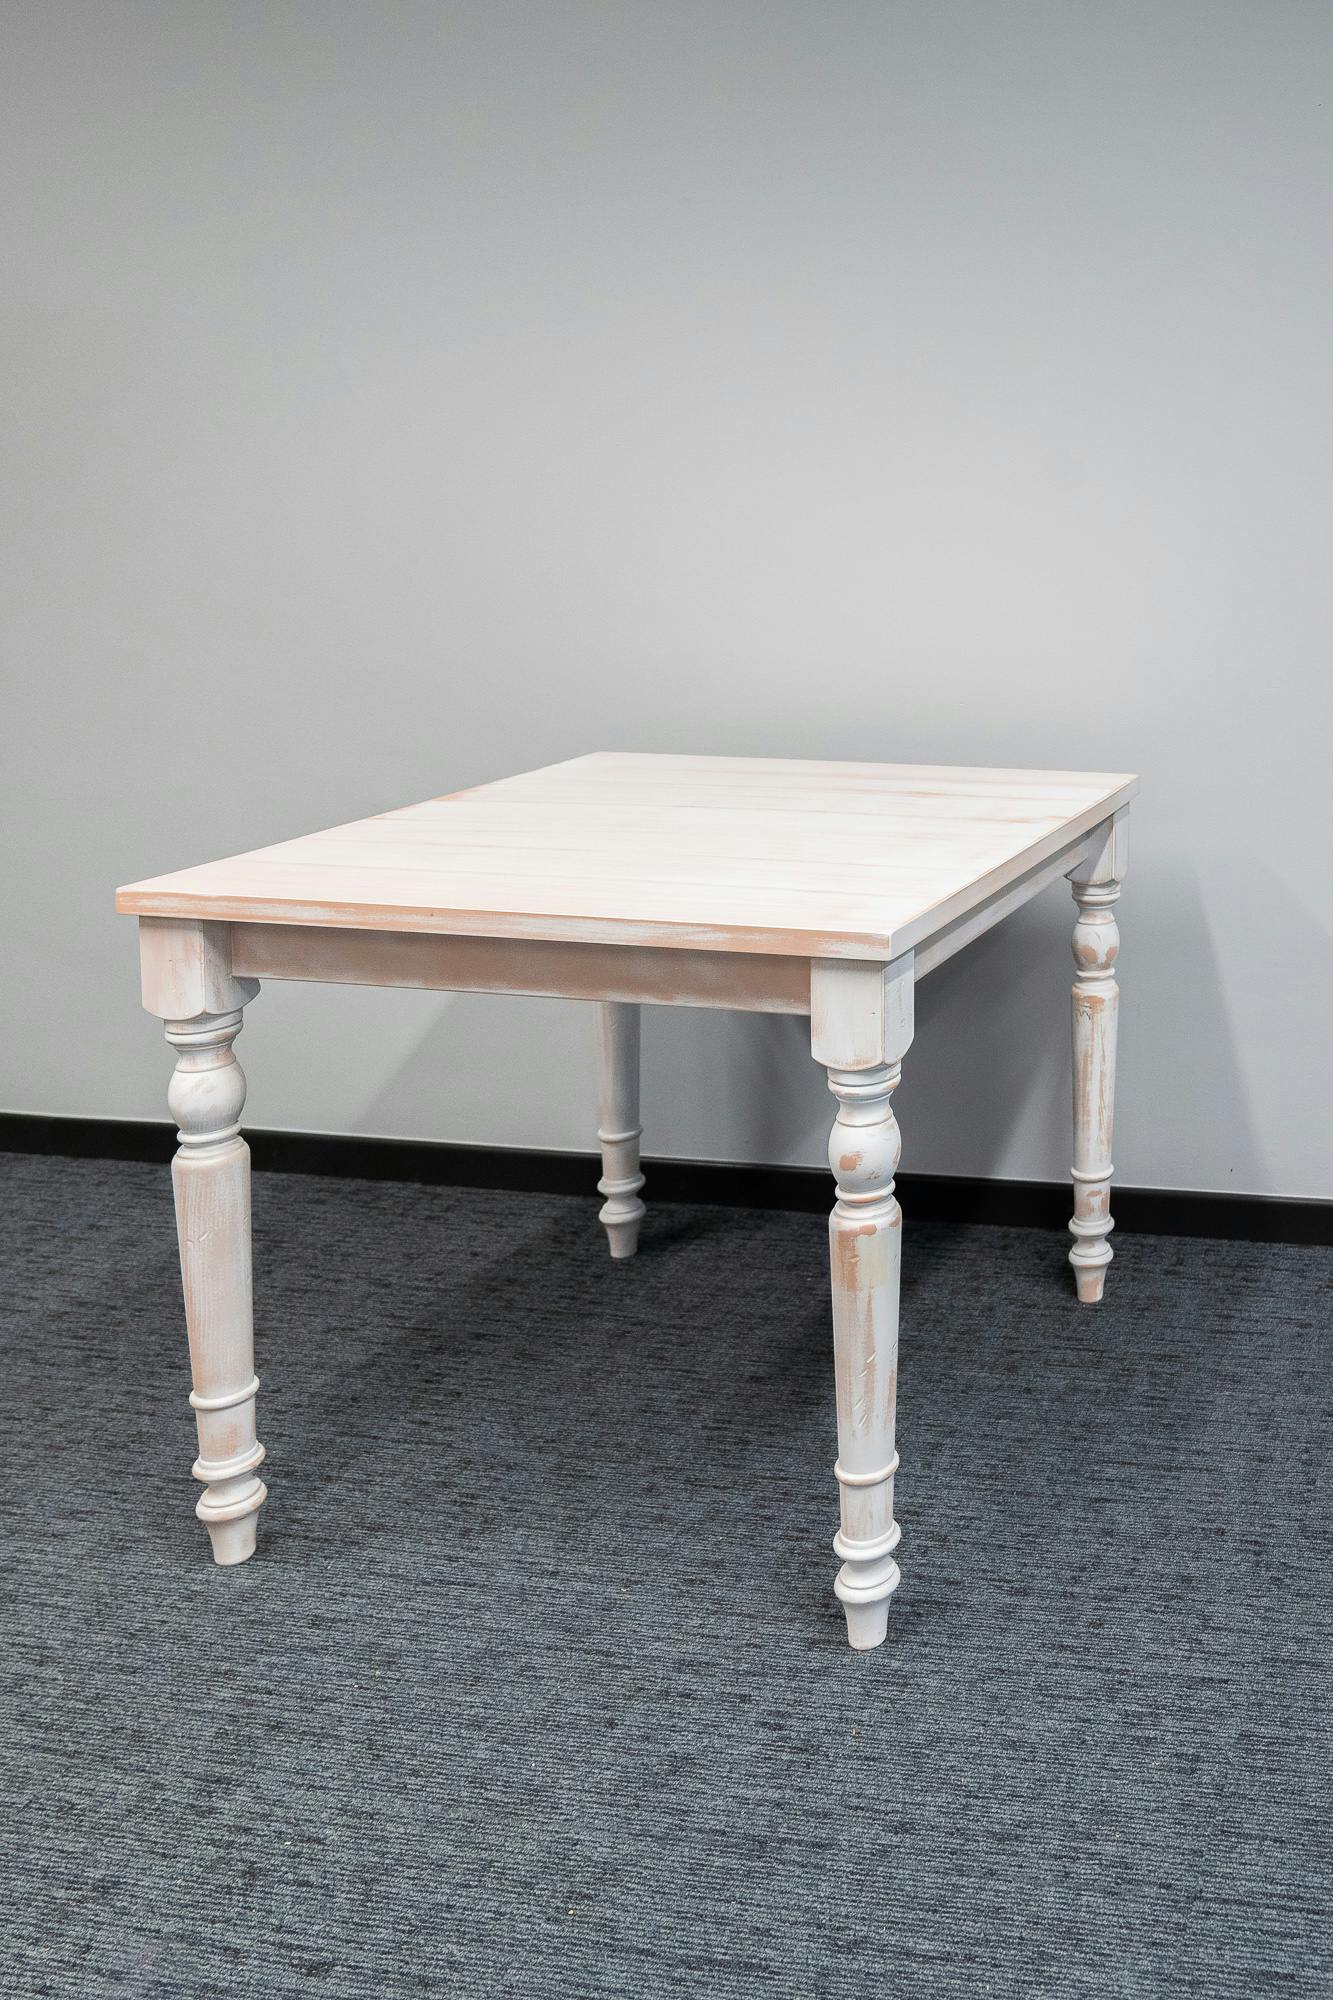 Vierkante houten tafel - Tweedehands kwaliteit "Tafels" - Relieve Furniture